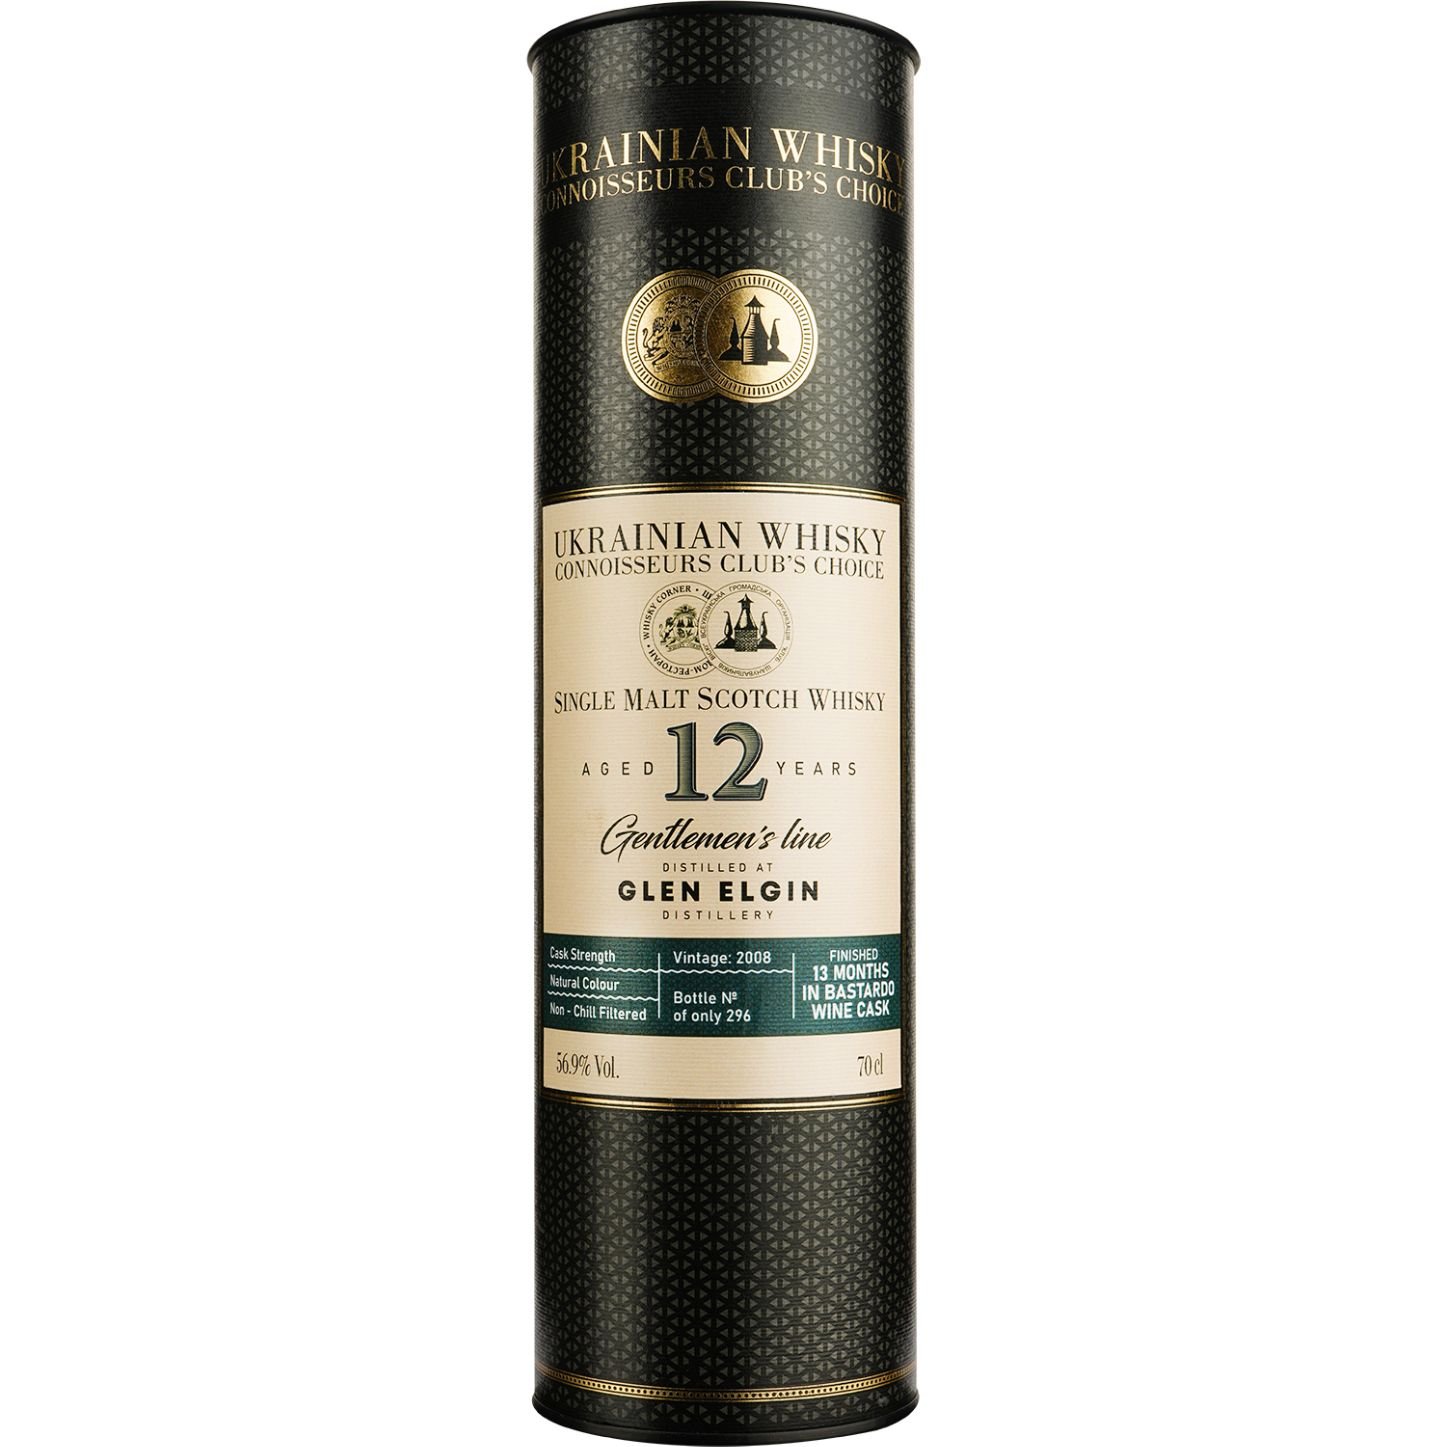 Виски Glen Elgin 12 Years Old Bastardo Single Malt Scotch Whisky, в подарочной упаковке, 56,9%, 0,7 л - фото 3